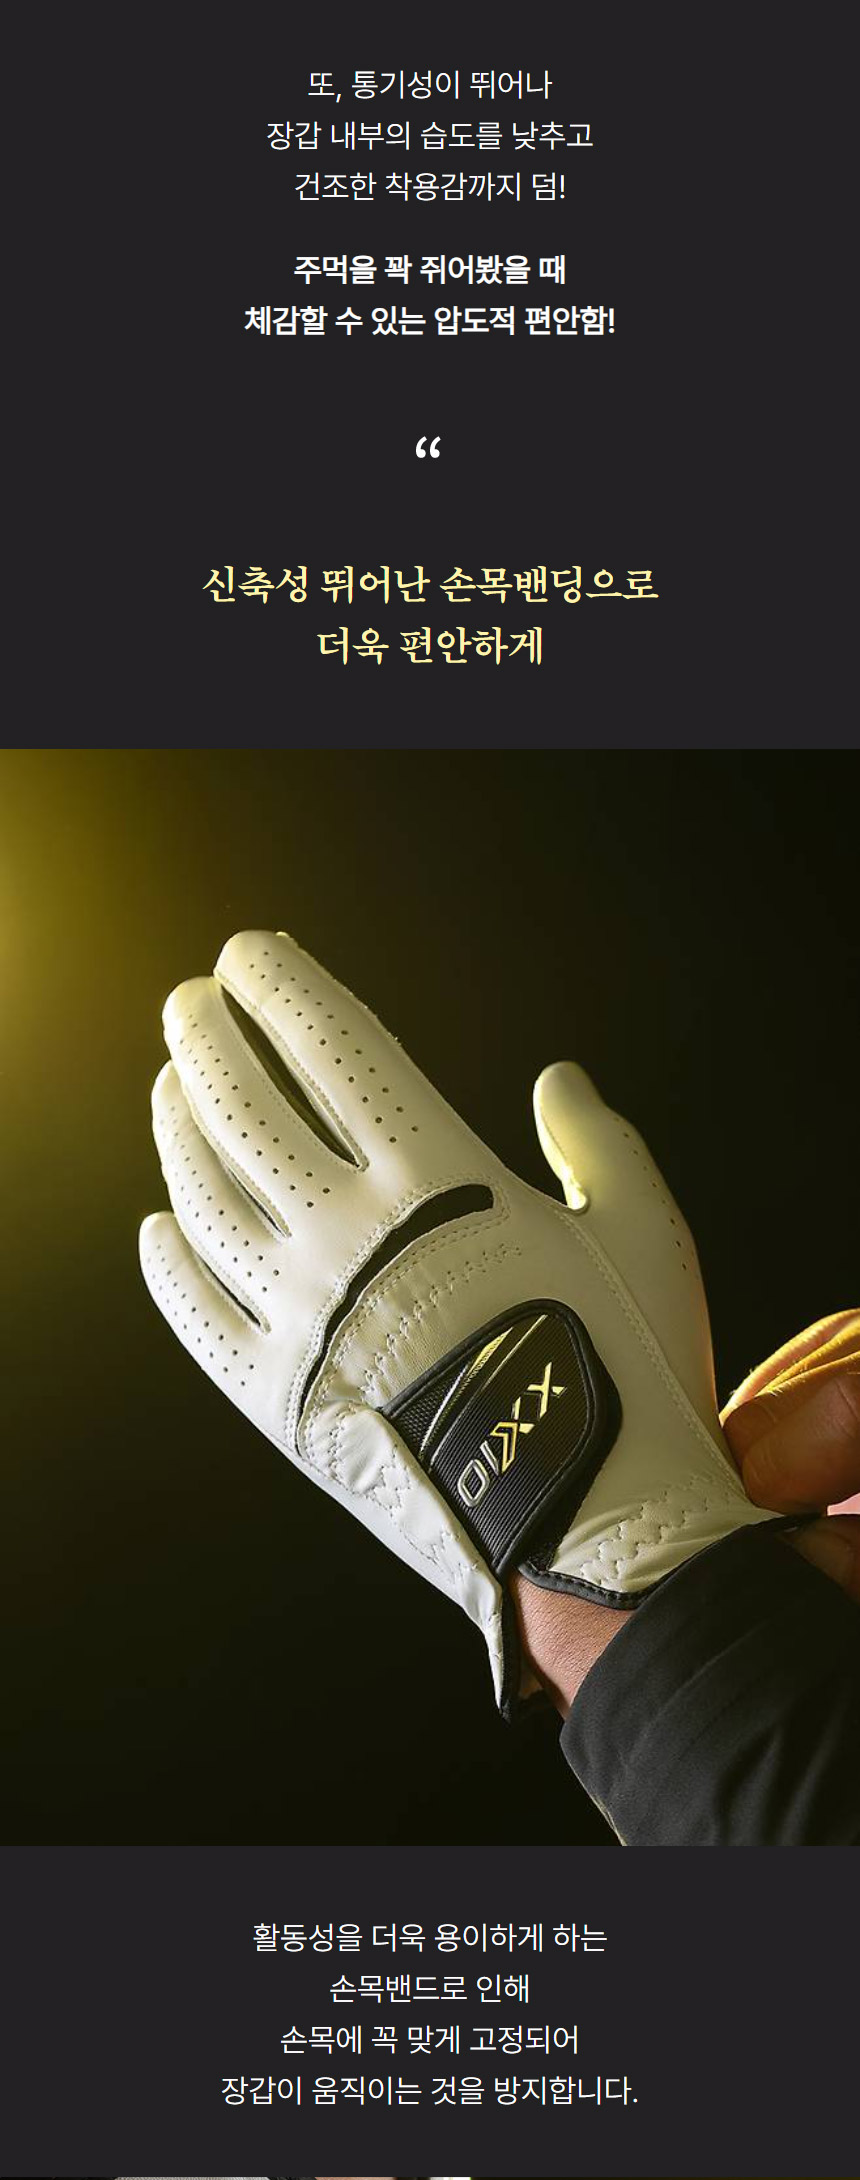 dunlop_xxio_premium_golf_gloves_24_09.jpg